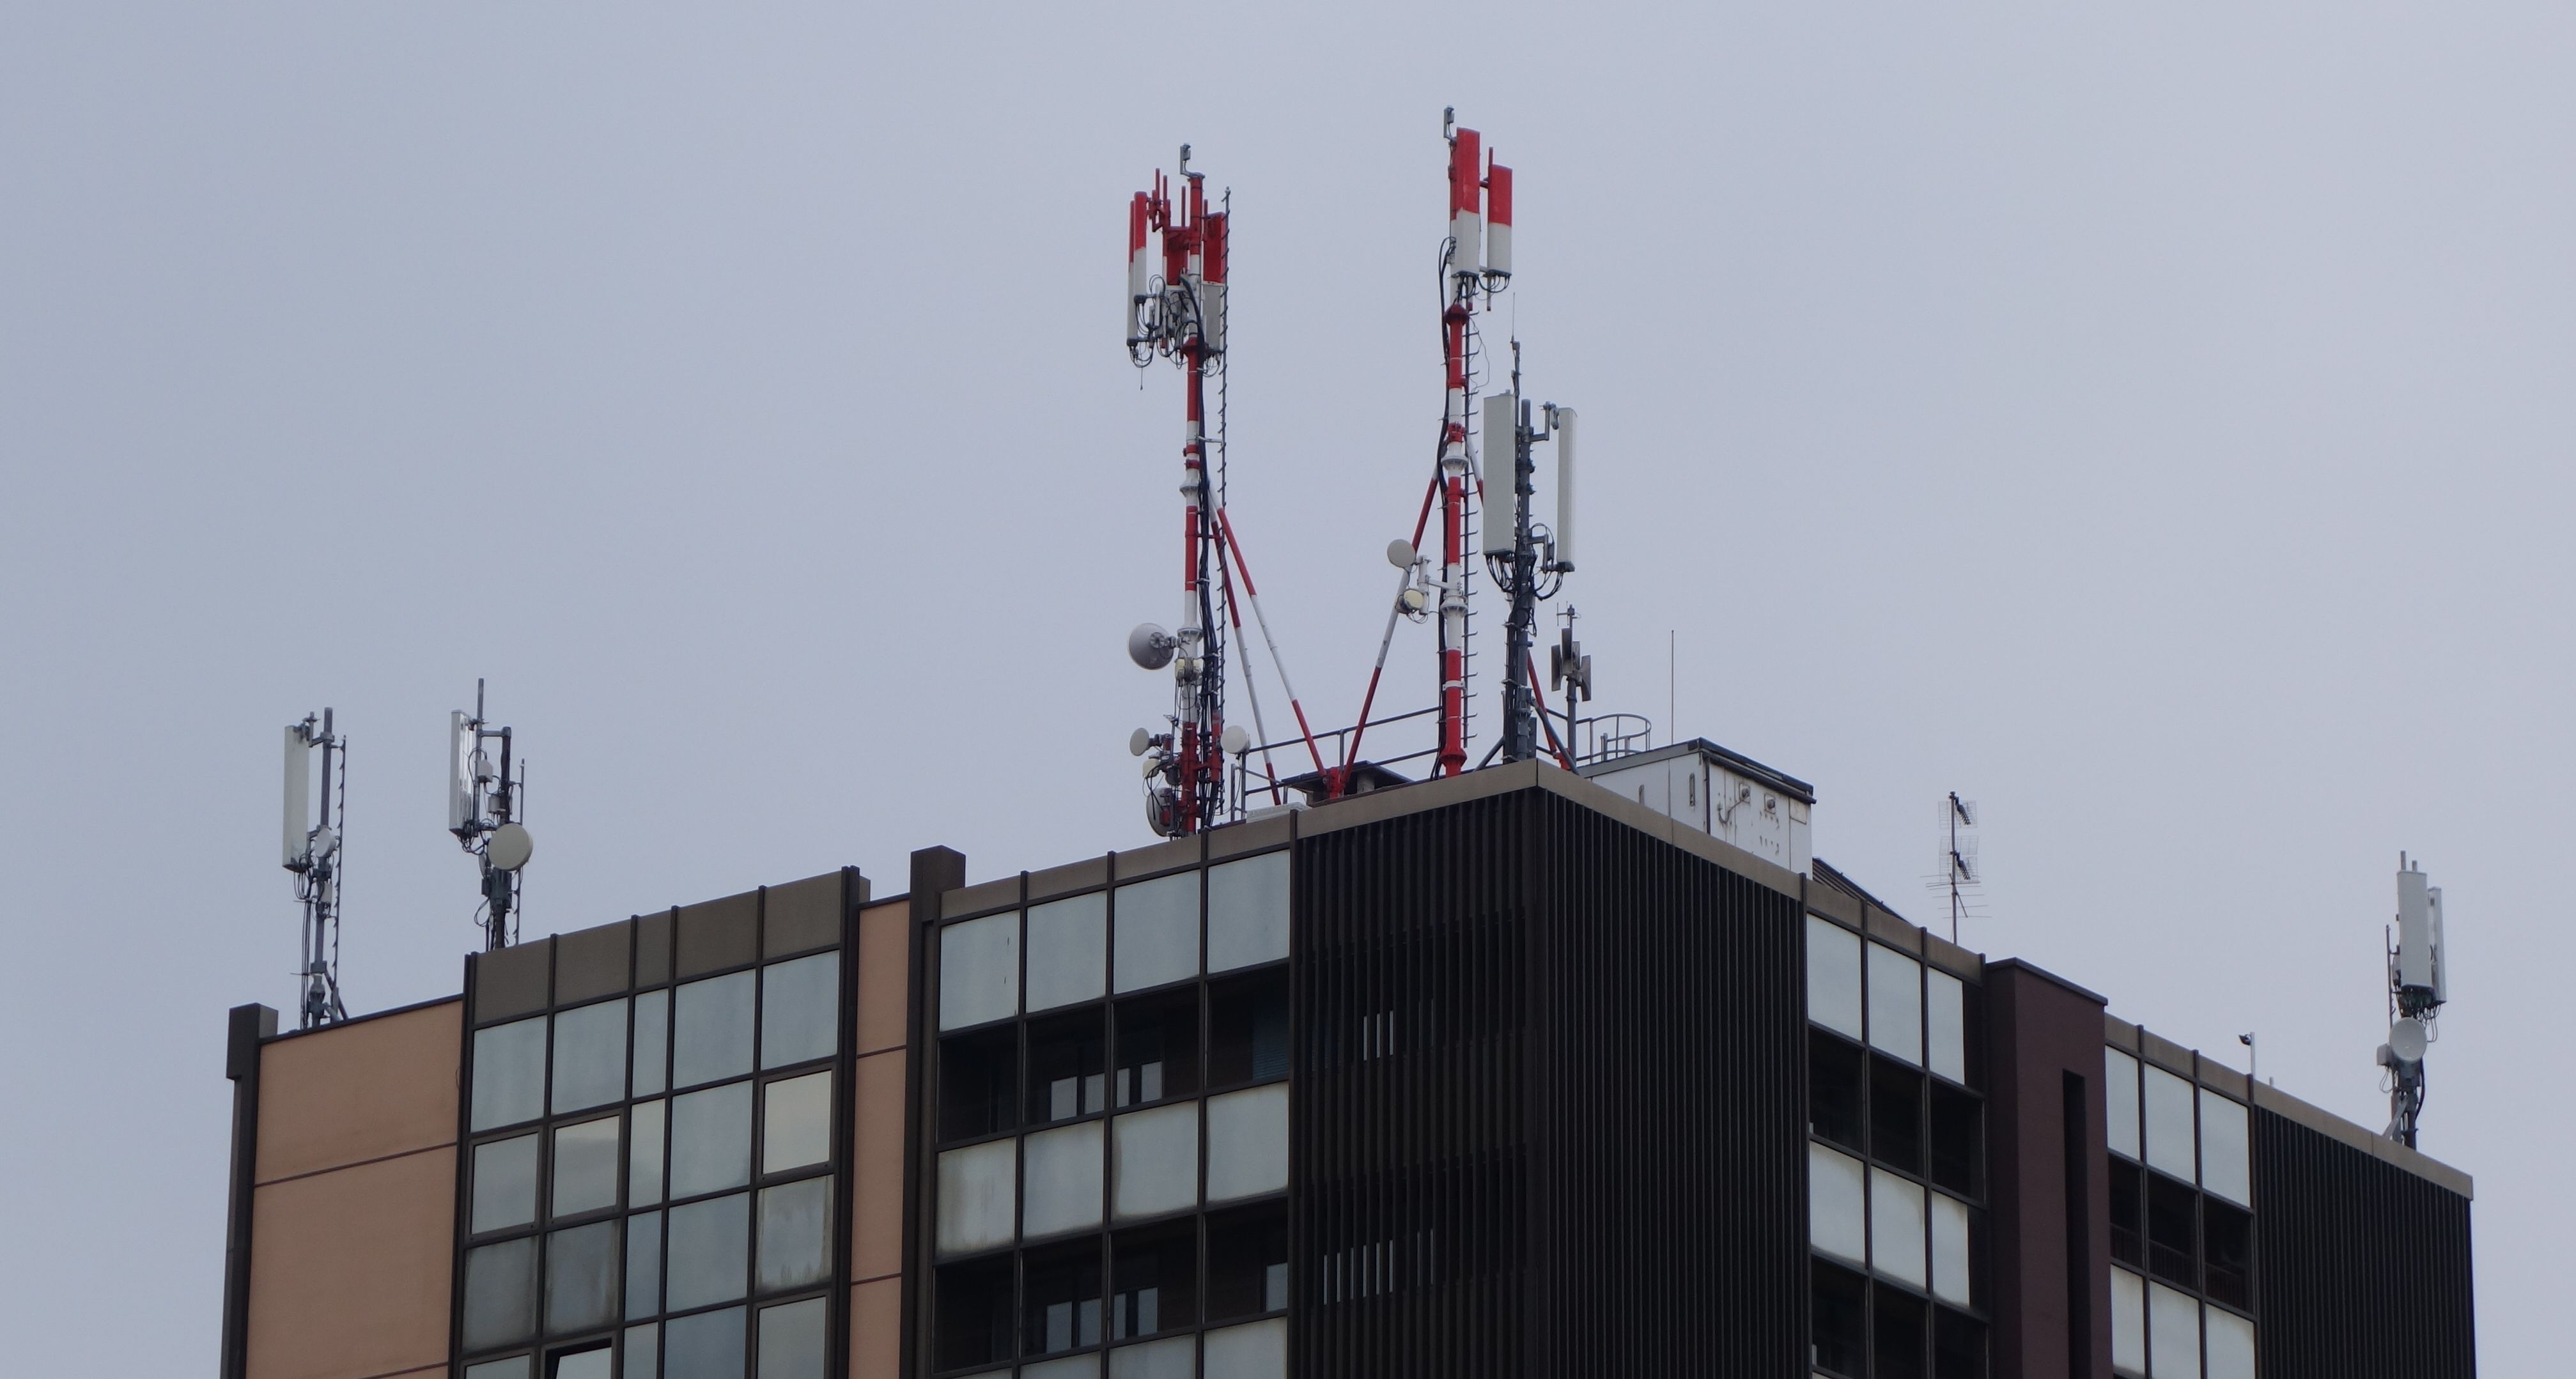 Die Antennen im Februar 2020. Die Antennen von H3G sind ersetzt worden.